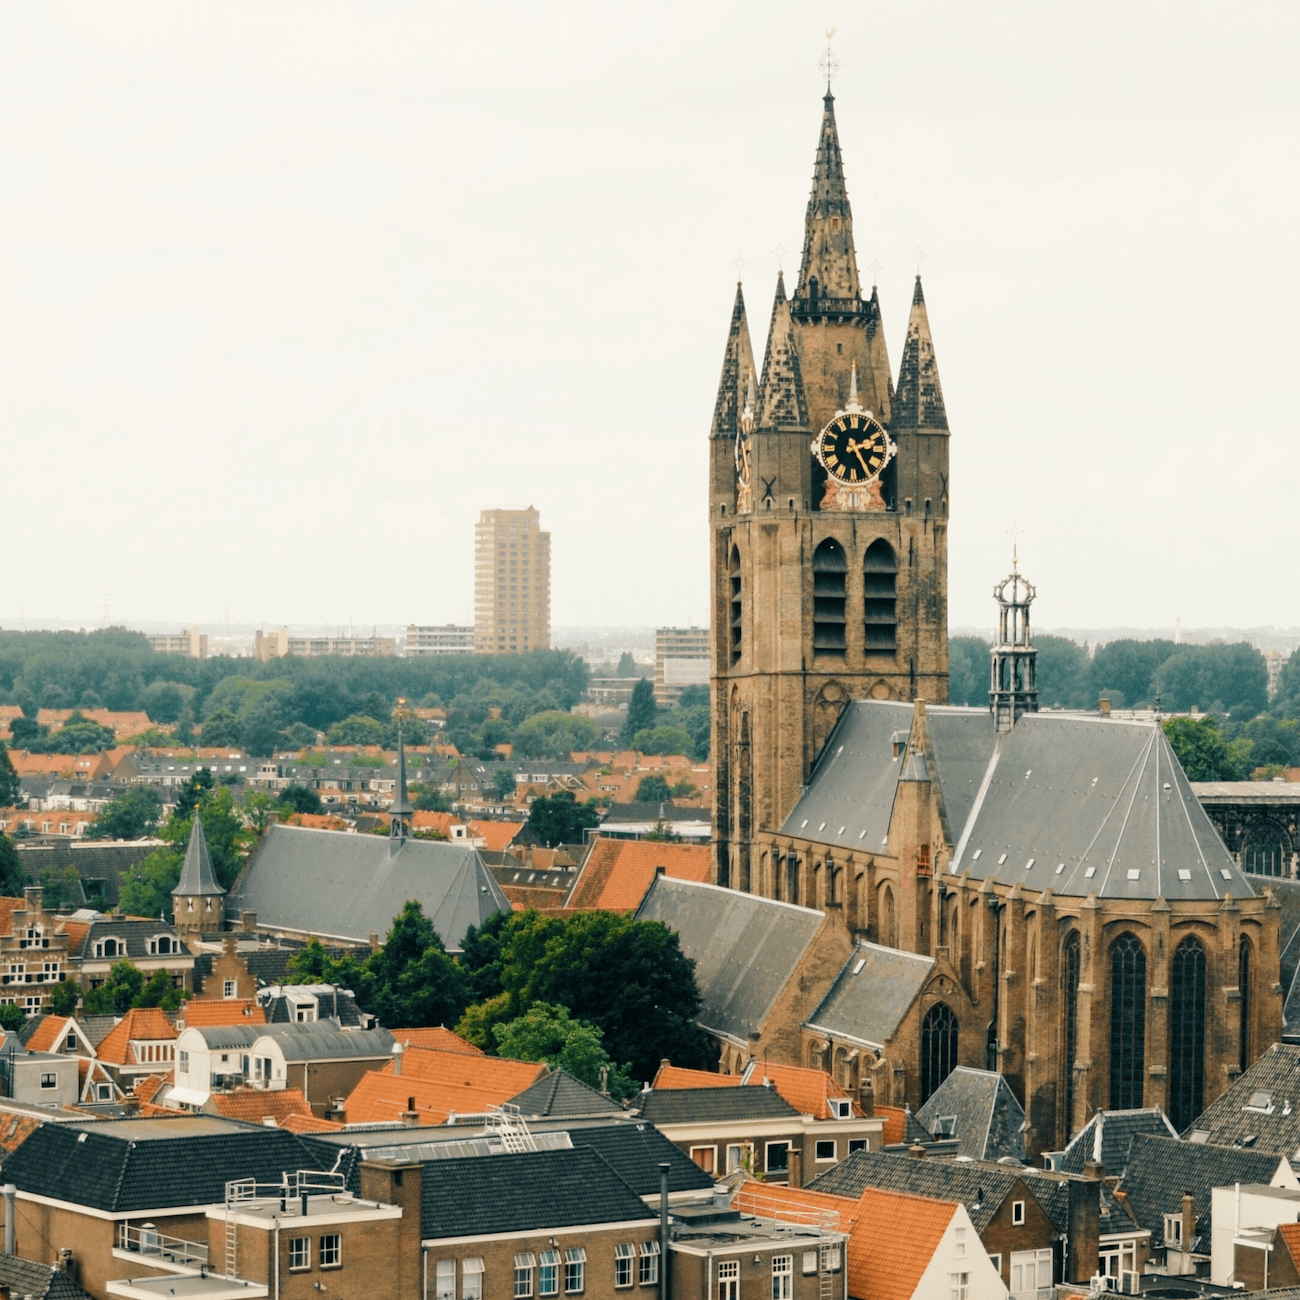 Administratiekantoor Delft